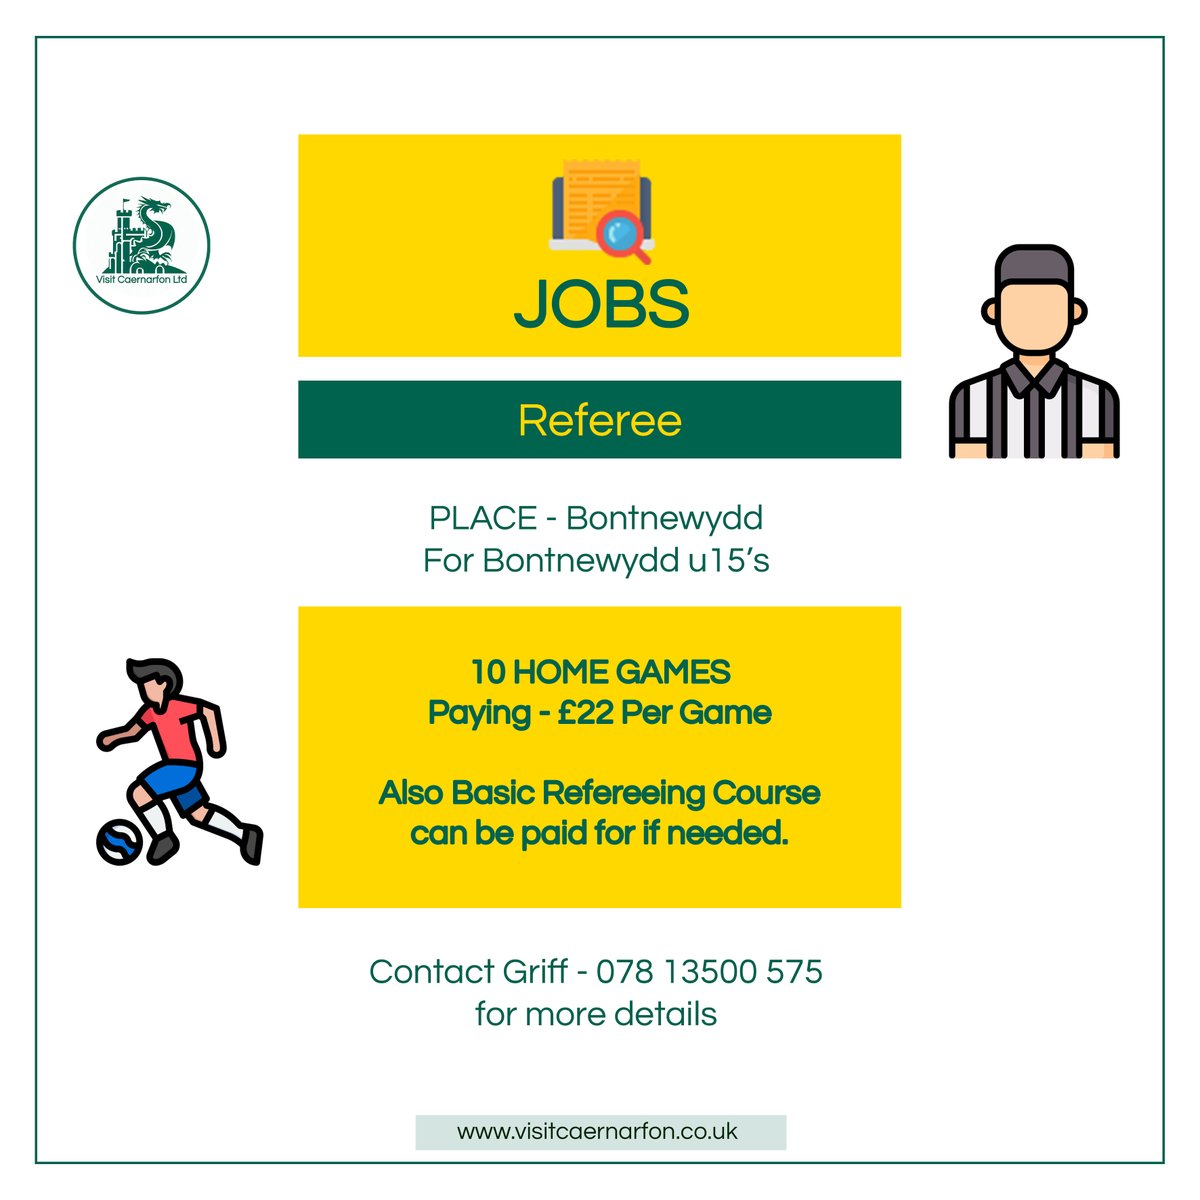 LOOKING FOR A JOB! Referee work is available in Botnewydd, local to Caernarfon! please contact Griff on 07813 500 575 for more details!

#caernarfon #bangor #gwynedd #northwalessocial #northwales  #visitcaernarfon #rhyl #menai #menaibridge #penygroes #rhosgadfan #bontnewydd